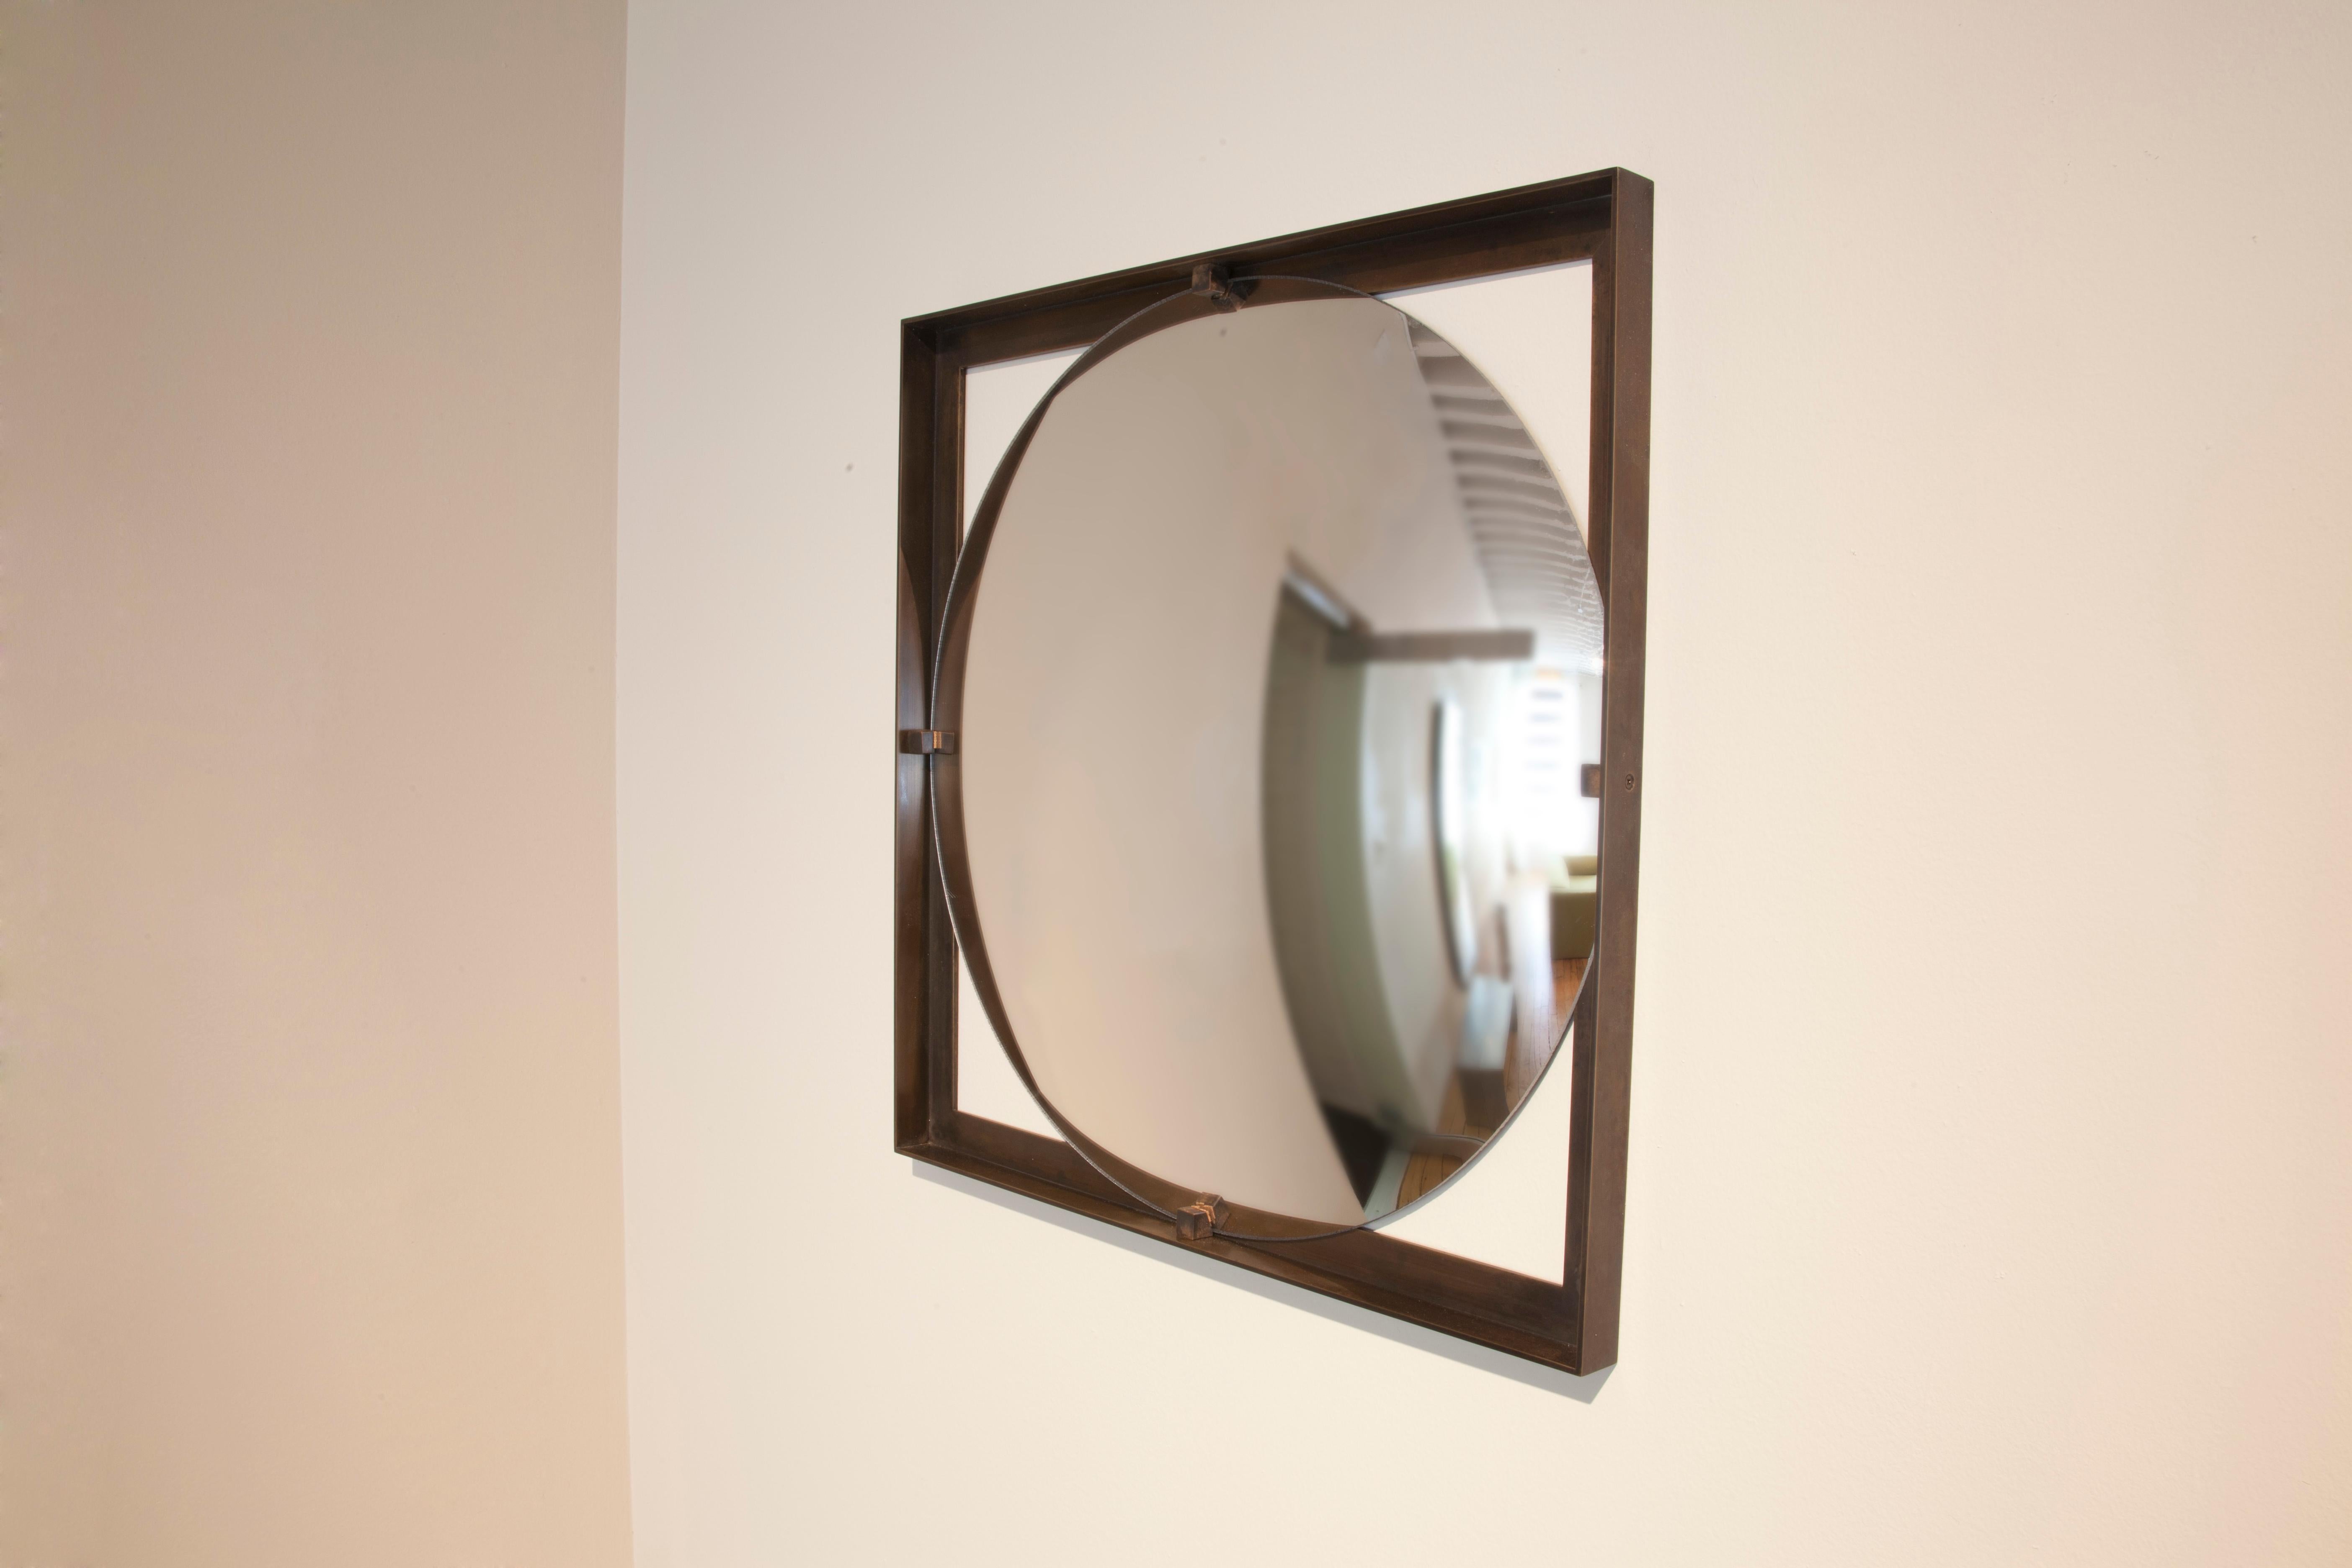 Miroir convexe Galt de Gentner Design
Dimensions : D 45,7 x H 2,5 cm
Matériaux : bronze, miroir
Disponible en 2 tailles : D45.7cm, D91.4cm.

Gentner Design
Ancrée dans un langage de sculpture, de détails qui définissent le caractère et d'un